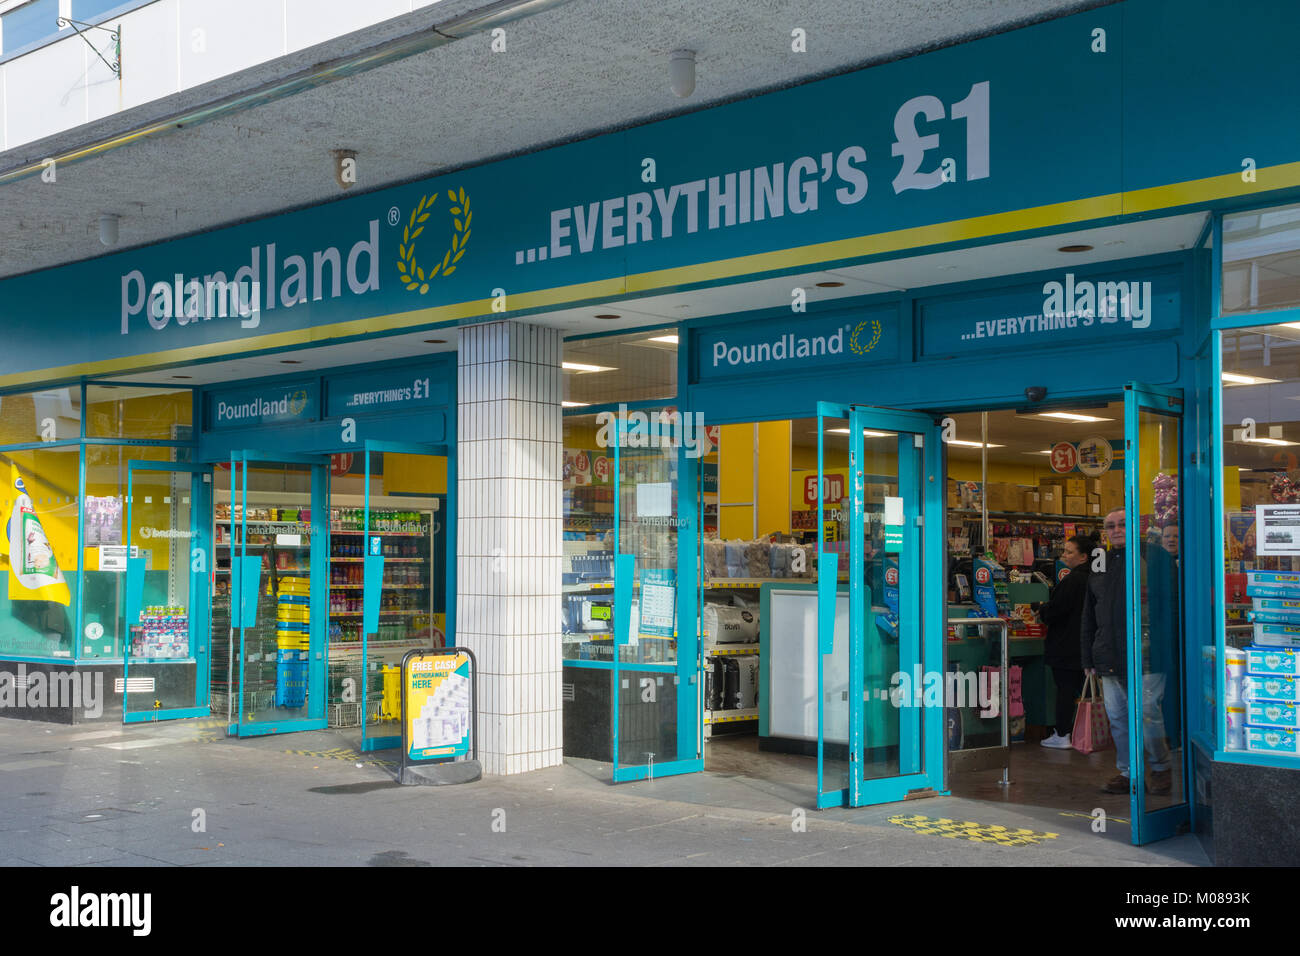 Poundland shop front and sign, UK Stock Photo